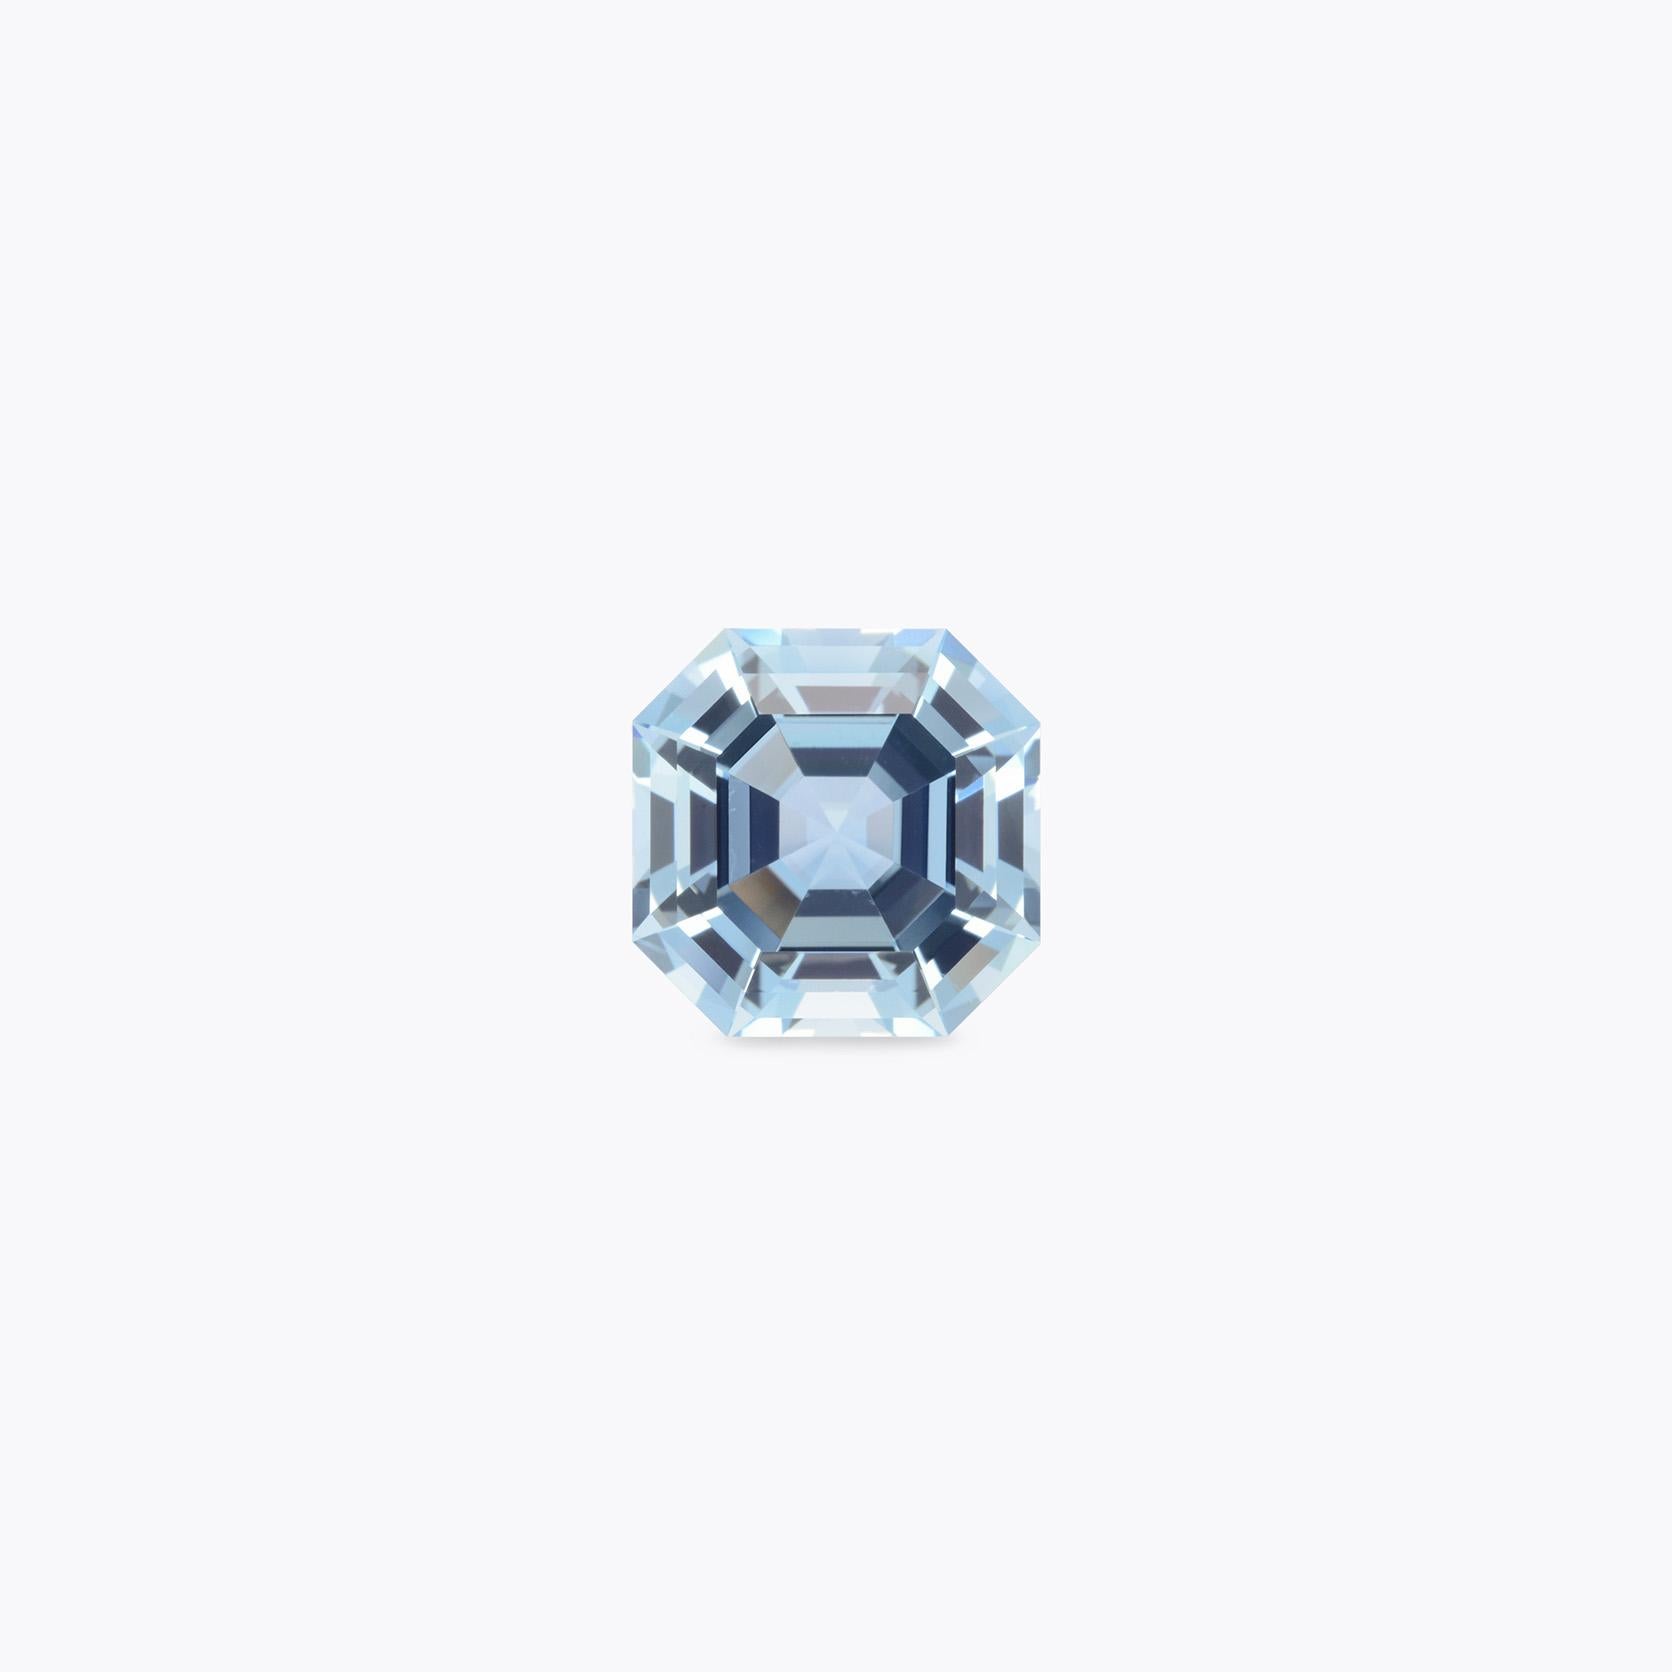 Contemporary Aquamarine Ring Gem 7.48 Carat Square Octagon Loose Gemstone - Reserved 